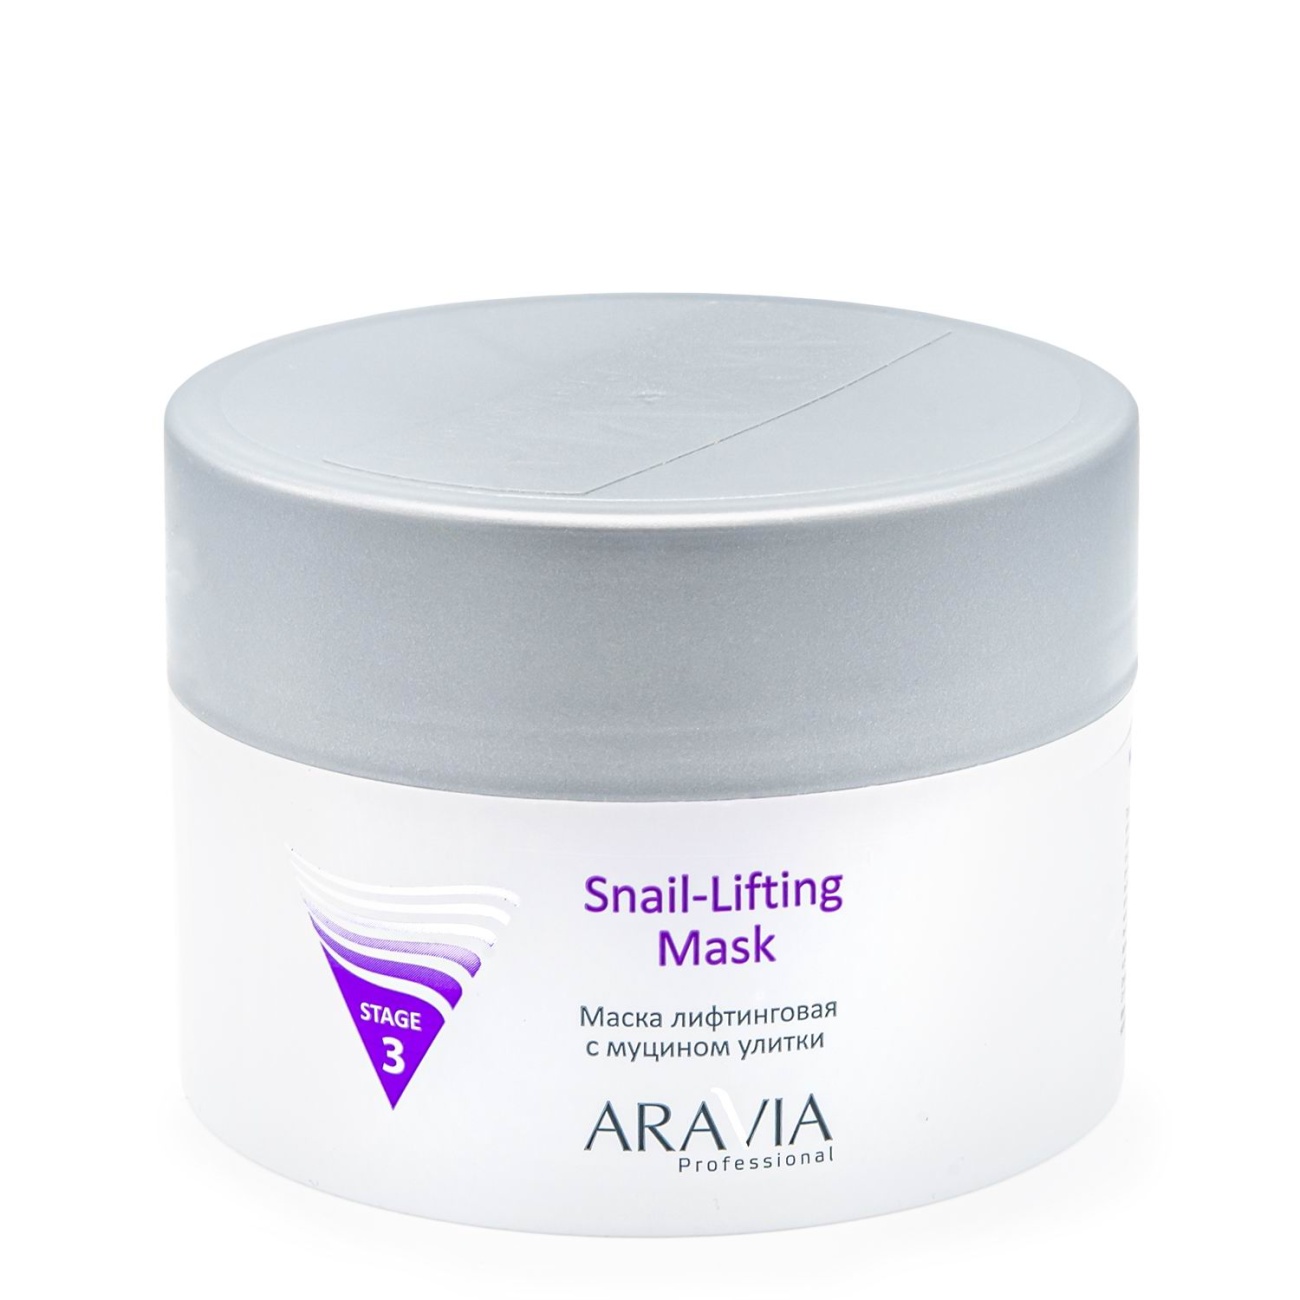 Маска для лица ARAVIA Professional Snail-Lifting Mask Лифтинг с муцином улитки 150 мл 6016